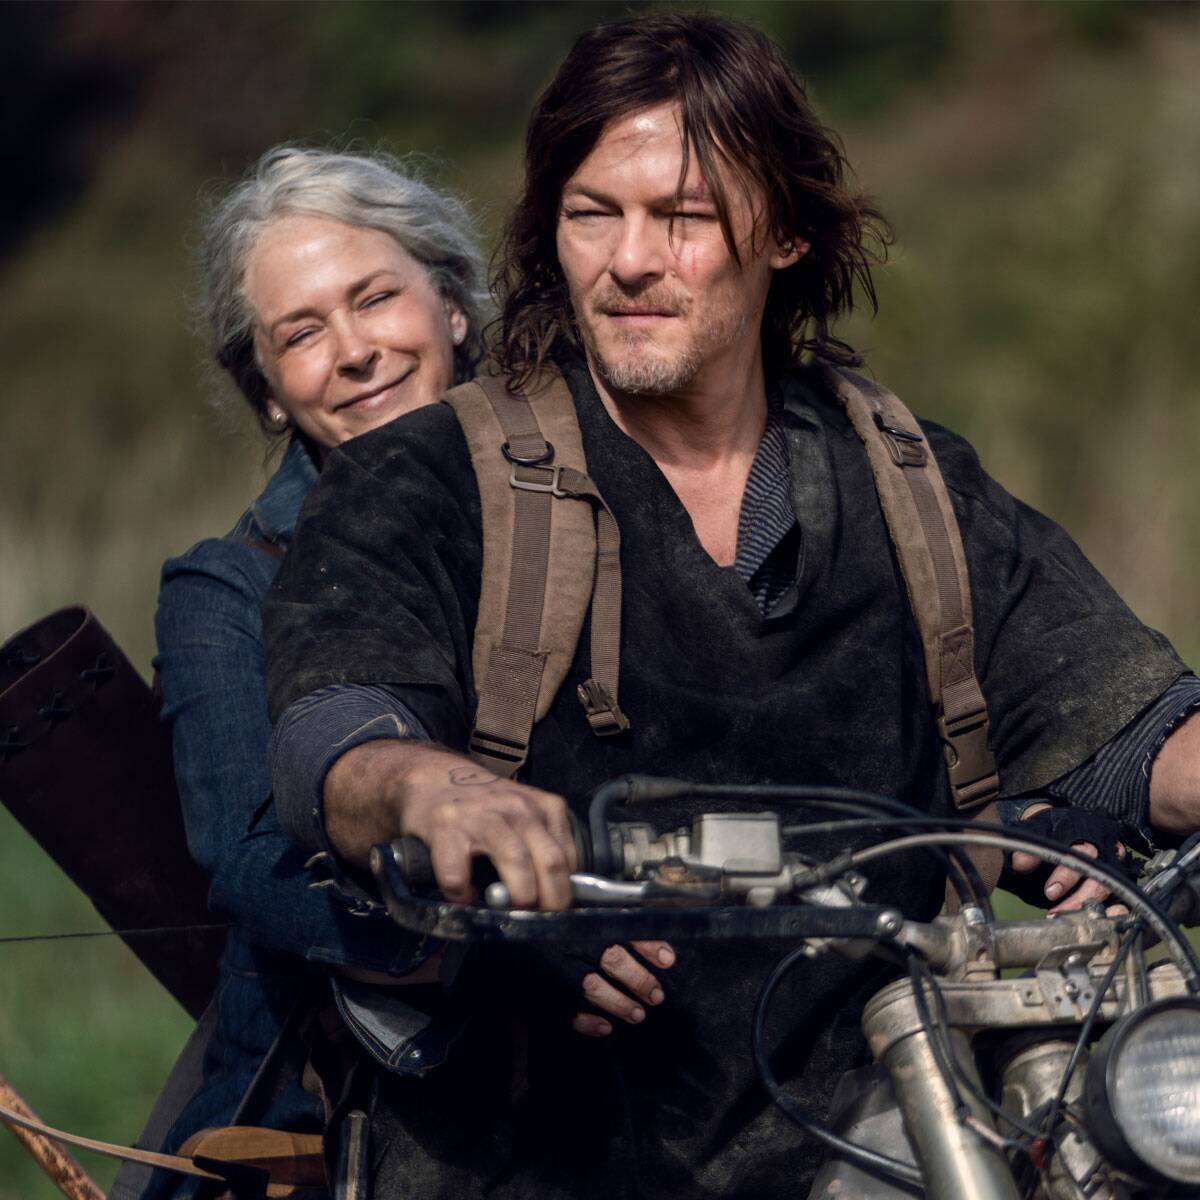 The Walking Dead Sneak Peek: Daryl and Carol Head Off on an Adventure